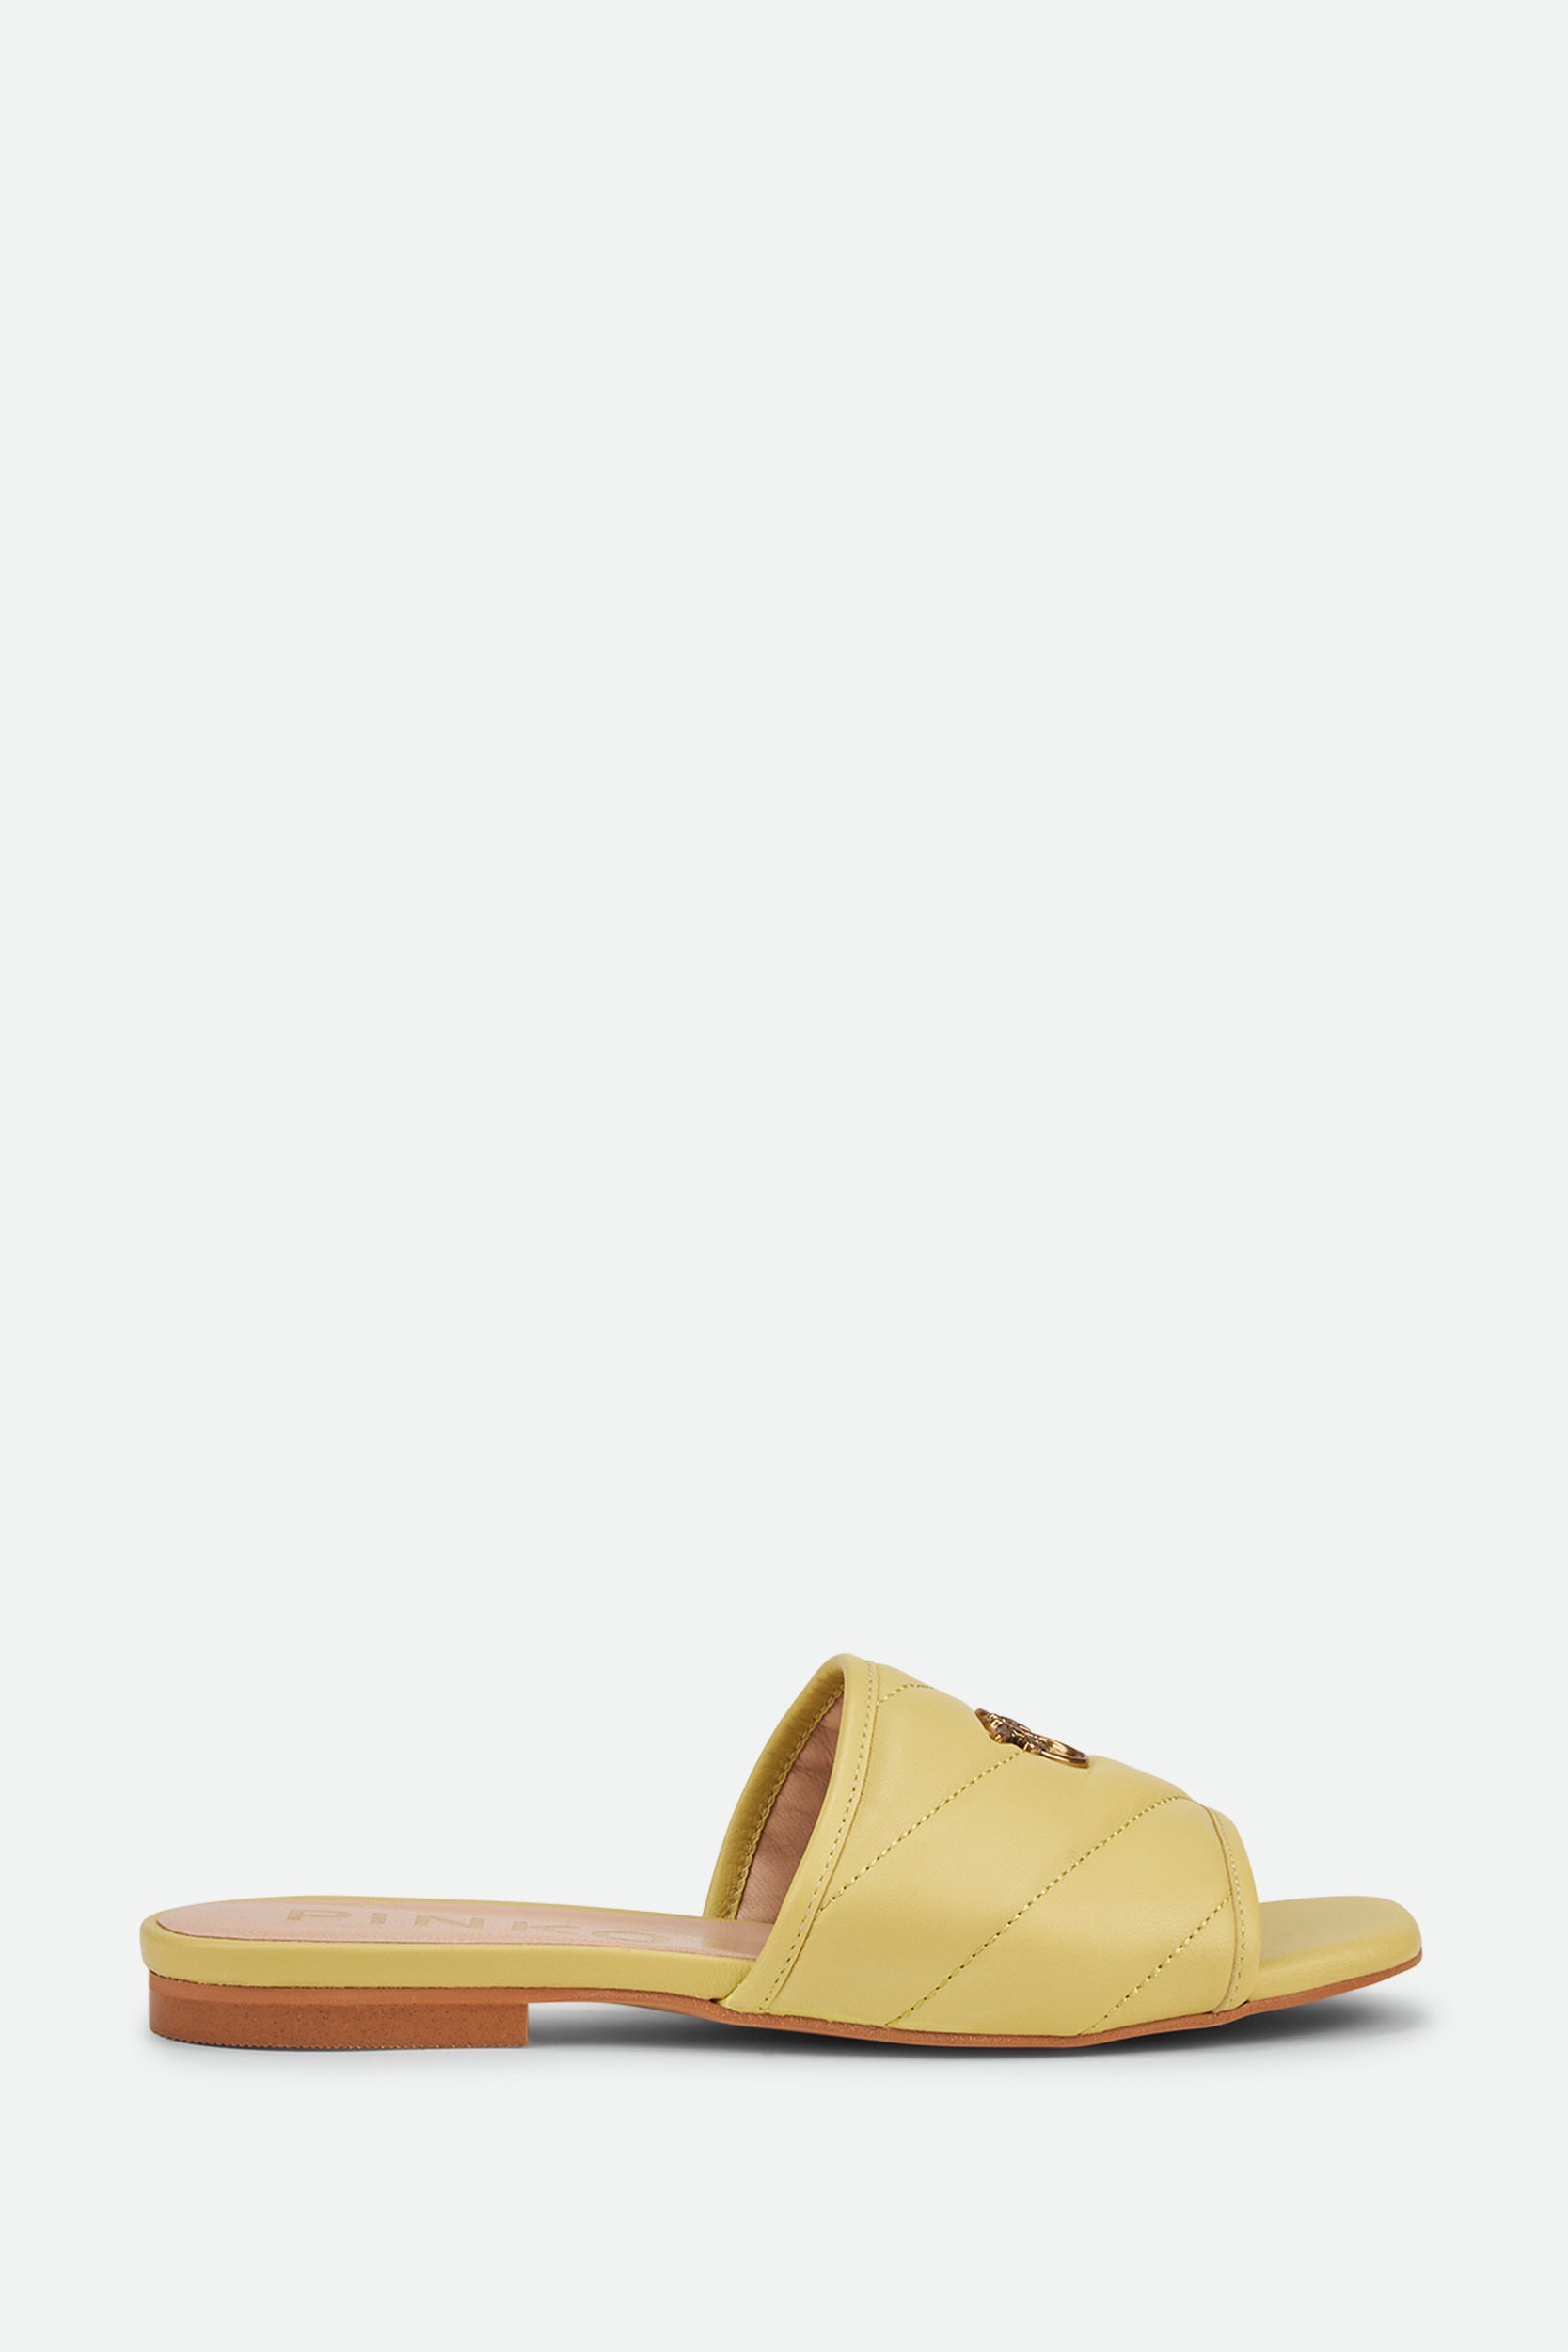 Pinko Yellow Low Sandal